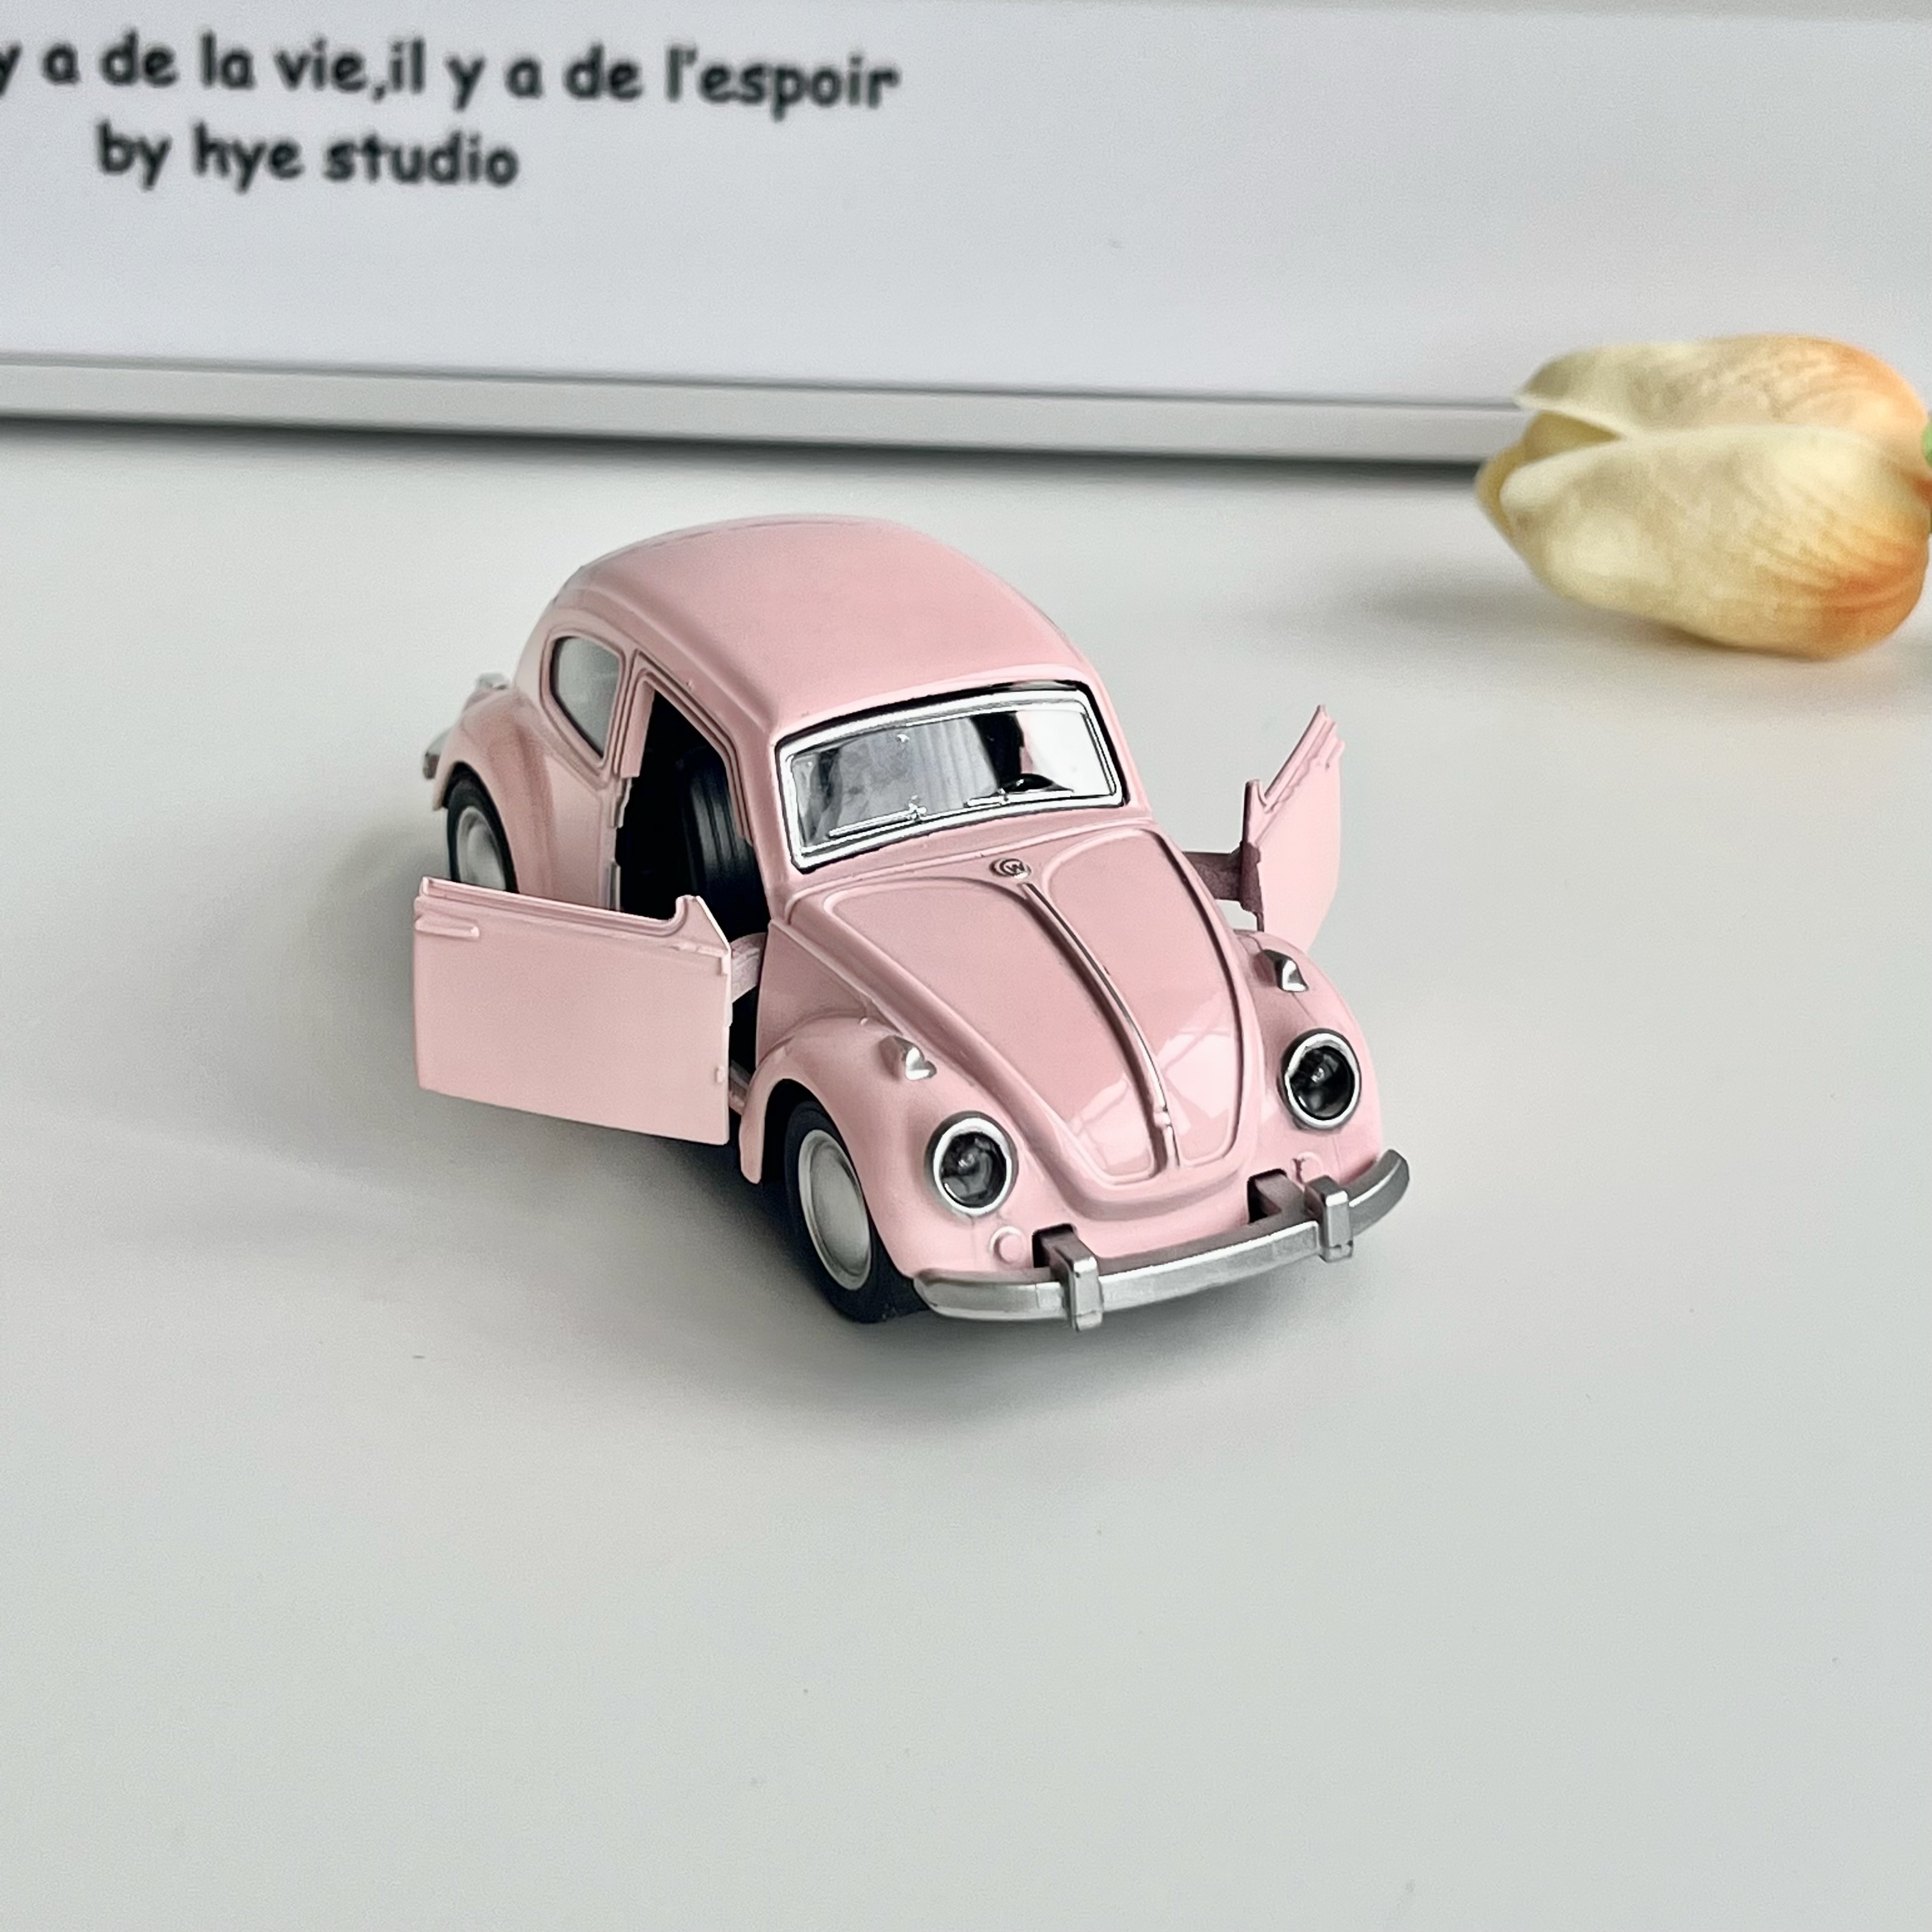 少女心房间粉色老爷车小汽车摆件家居装饰品儿童创意可爱玩具礼物